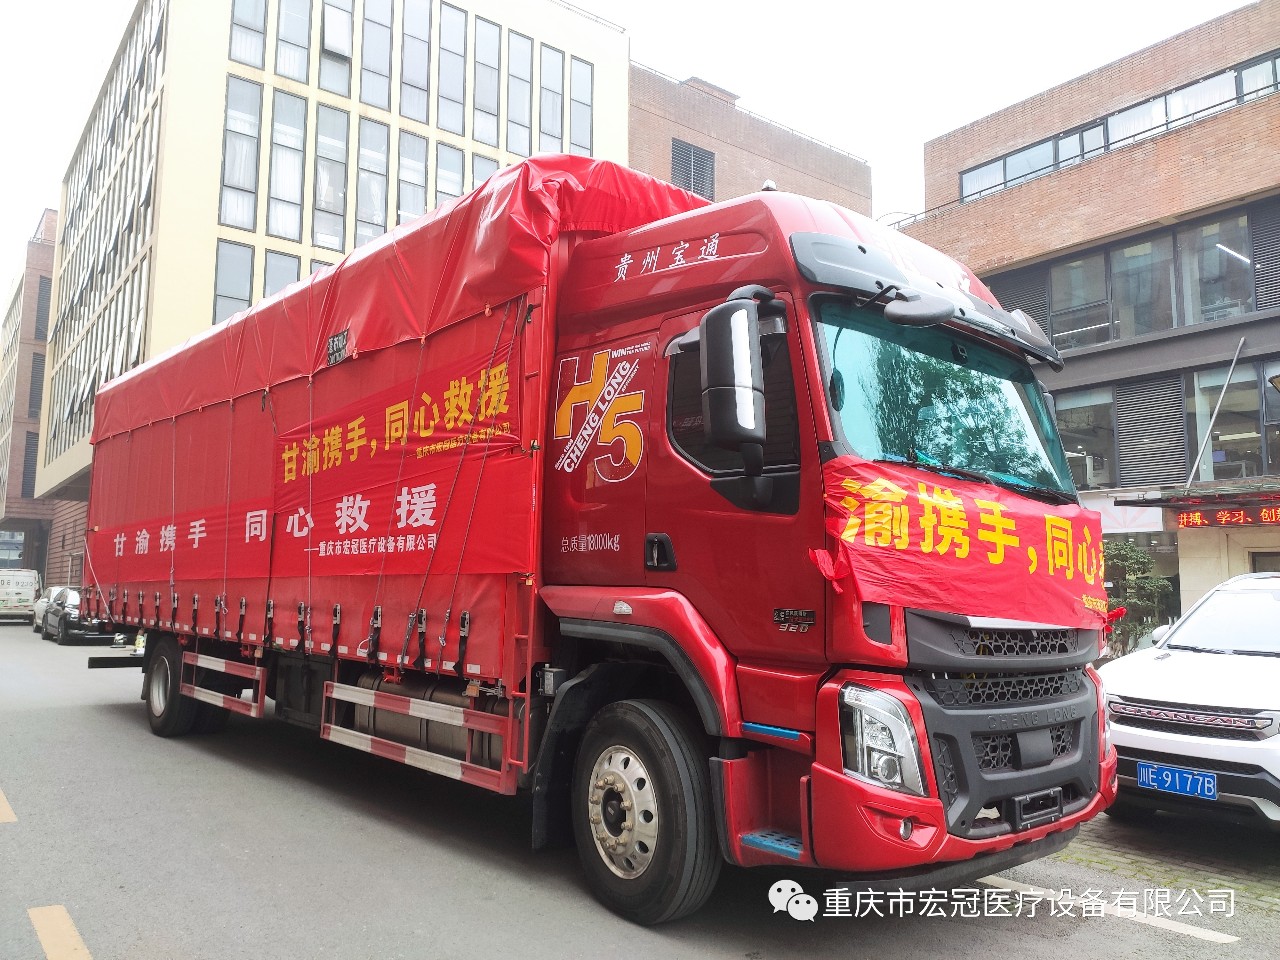 Chongqing Hongguan Medical Equipment Co., Ltd. dhuroi më shumë se 700,000 juanë furnizime mjekësore për të mbështetur zonat e katastrofës në Gansu.